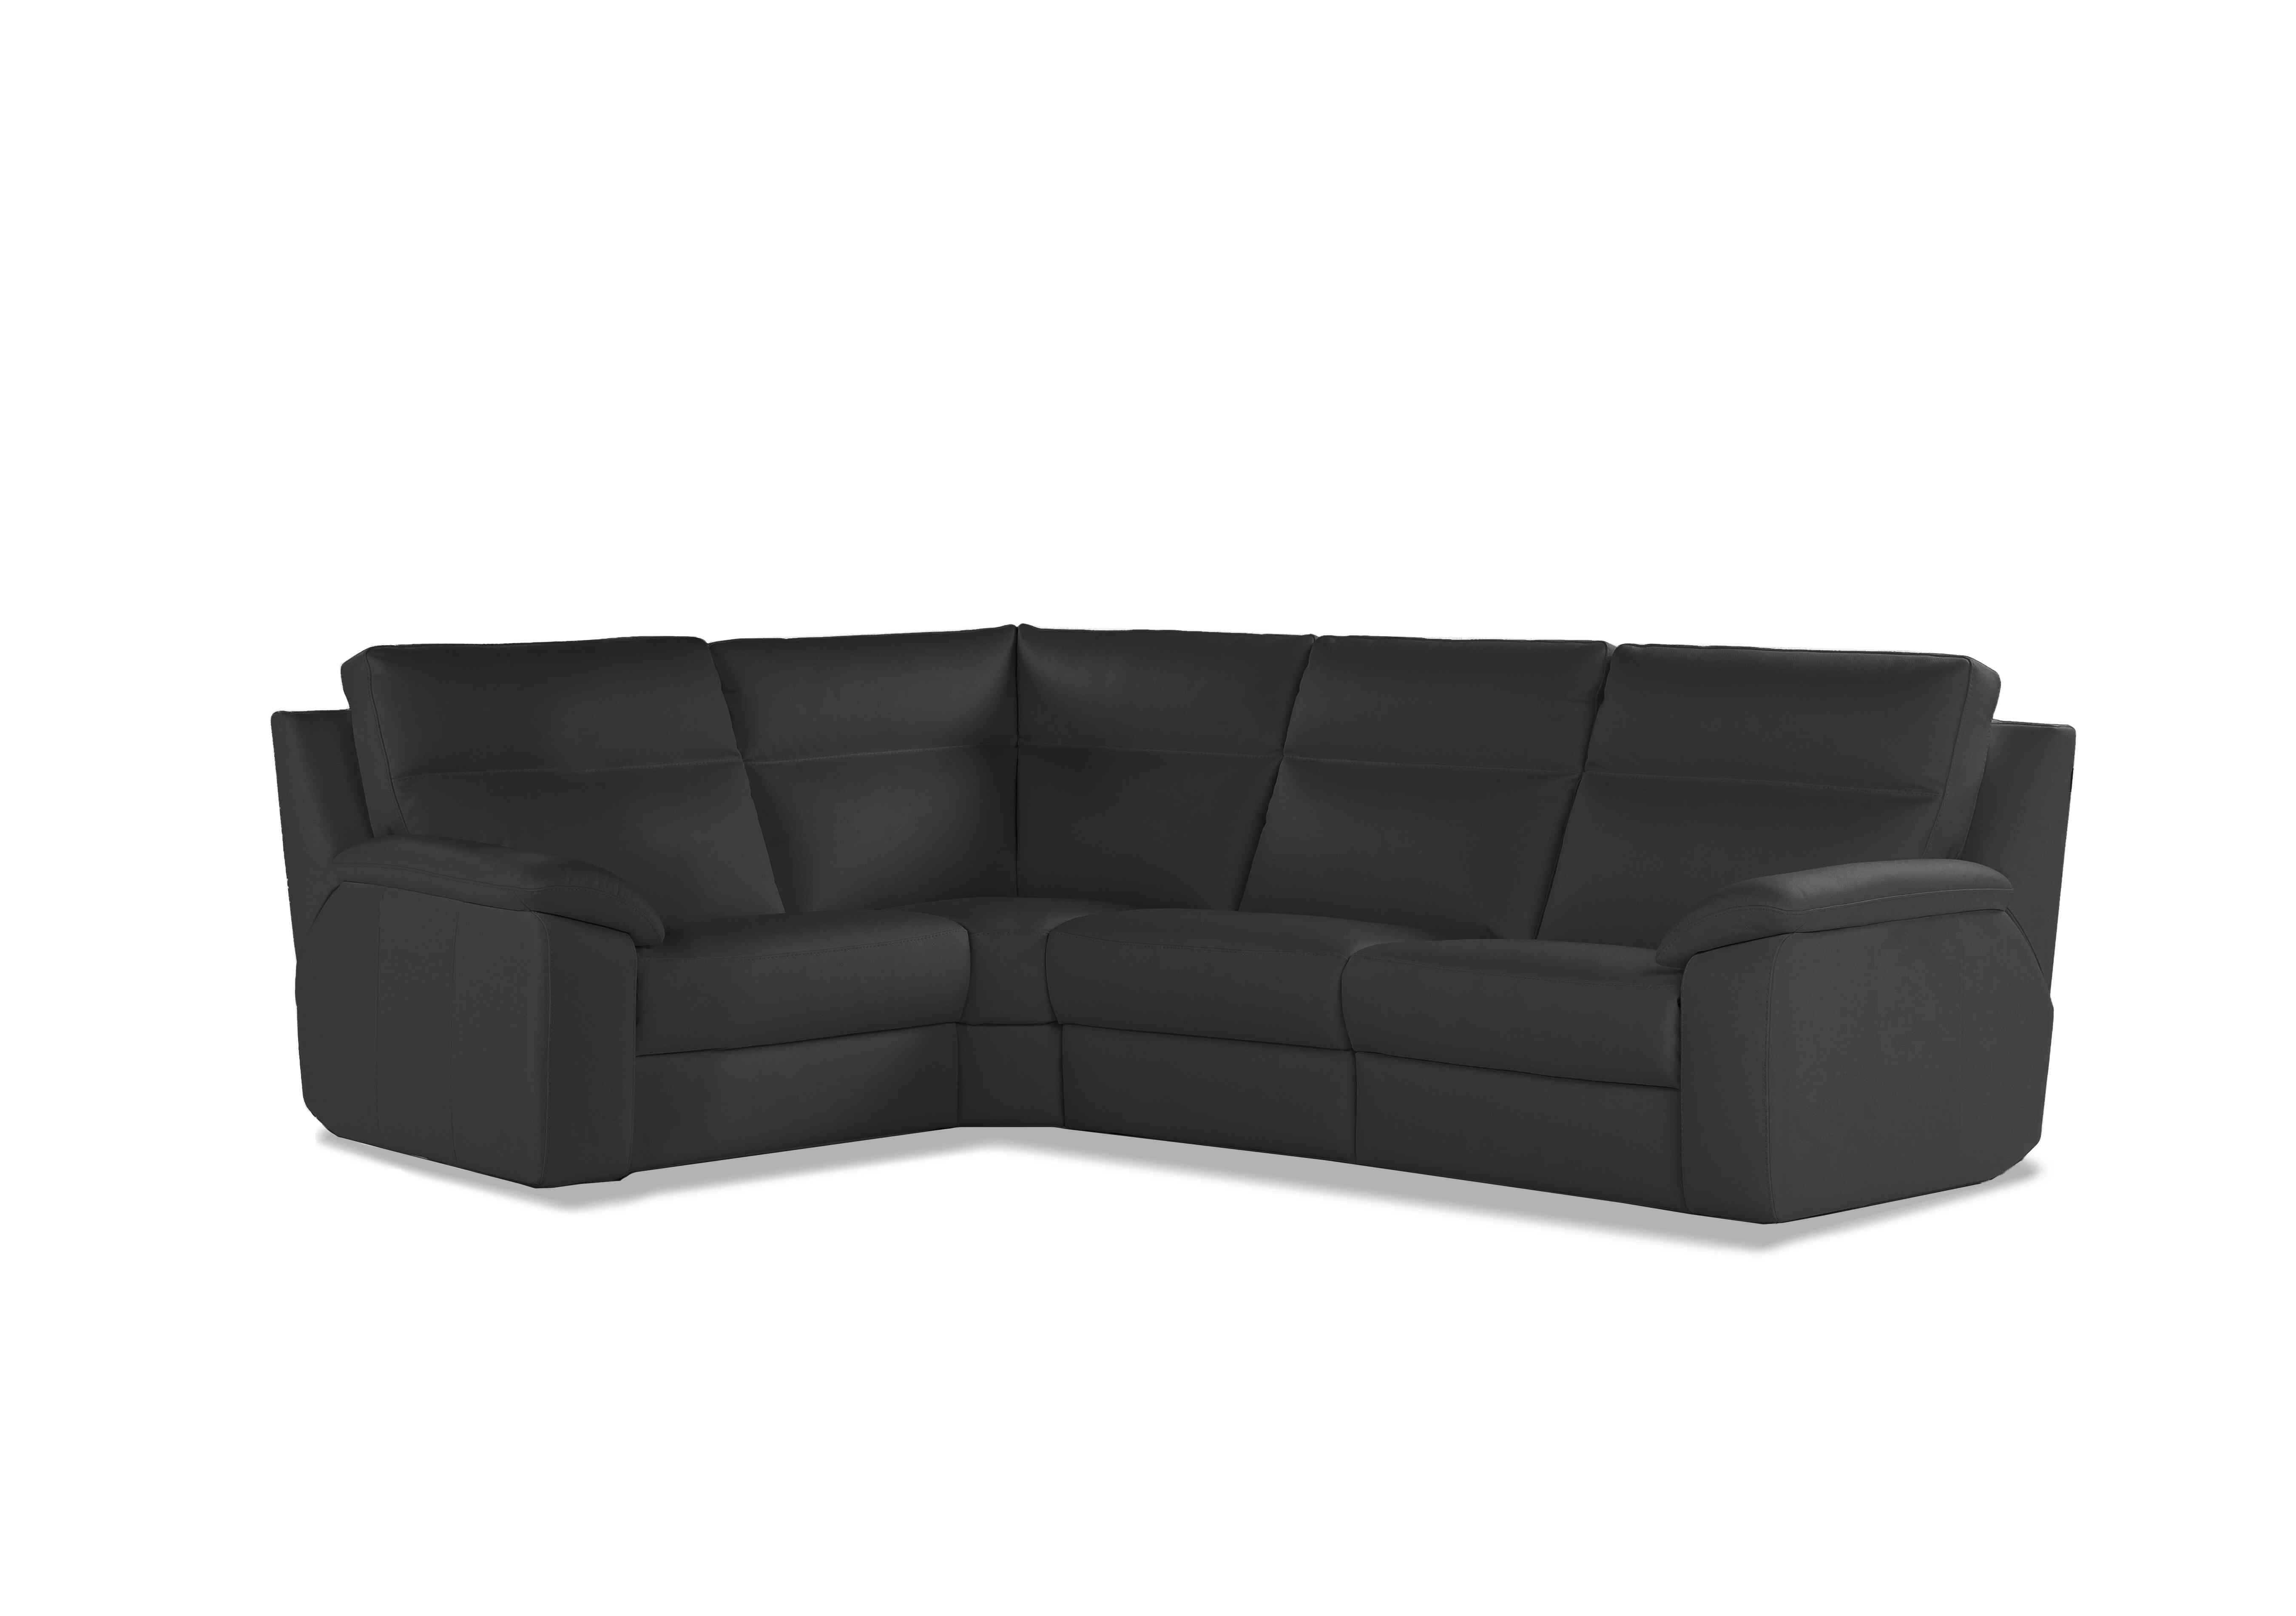 Pepino Small Leather Corner Sofa in 327 Torello Grigio Scuro on Furniture Village